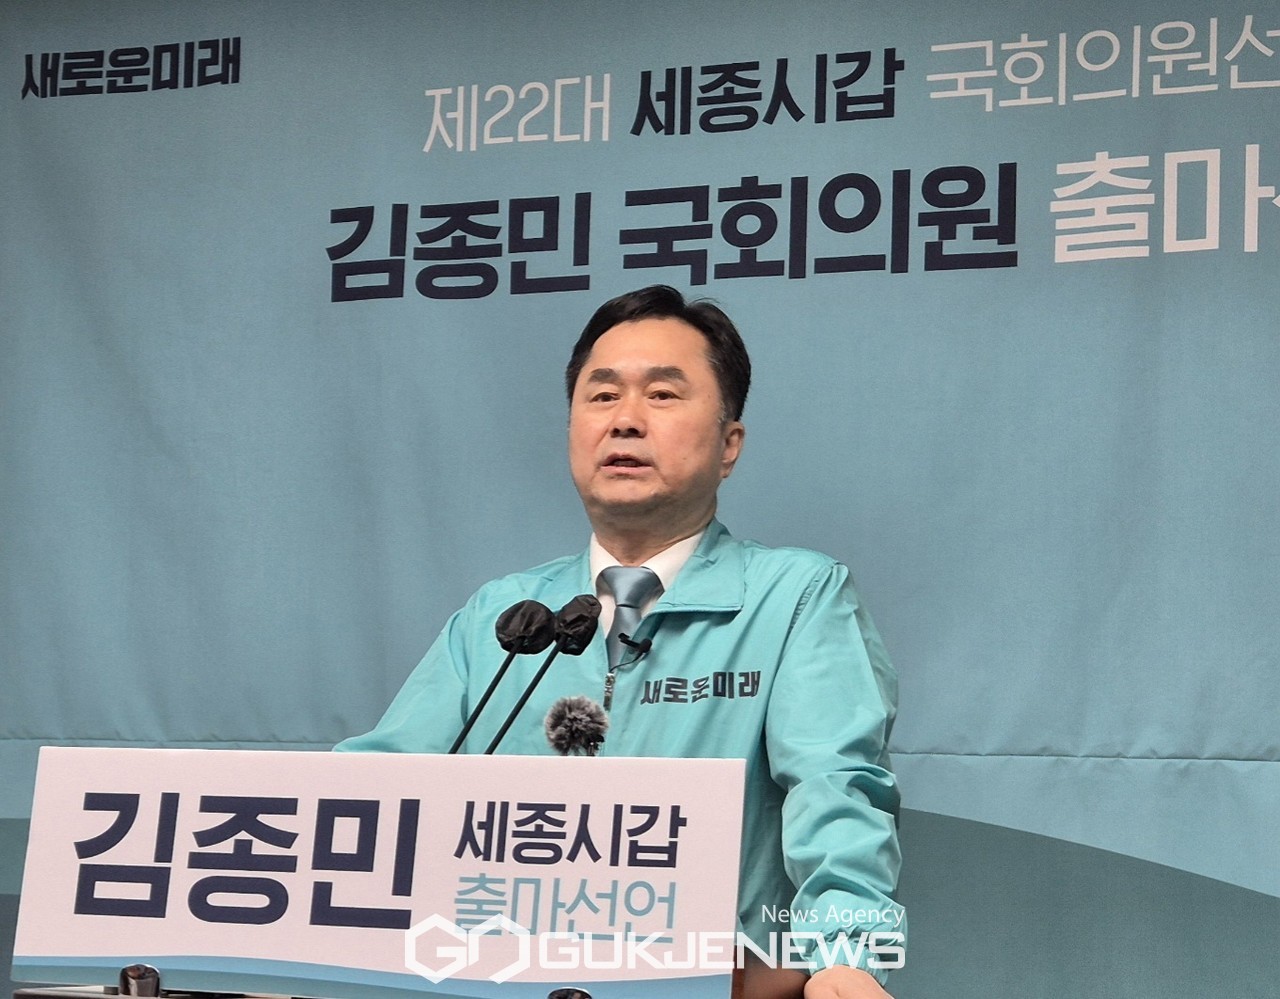 새로운미래 공동대표 김종민 국회의원 후보